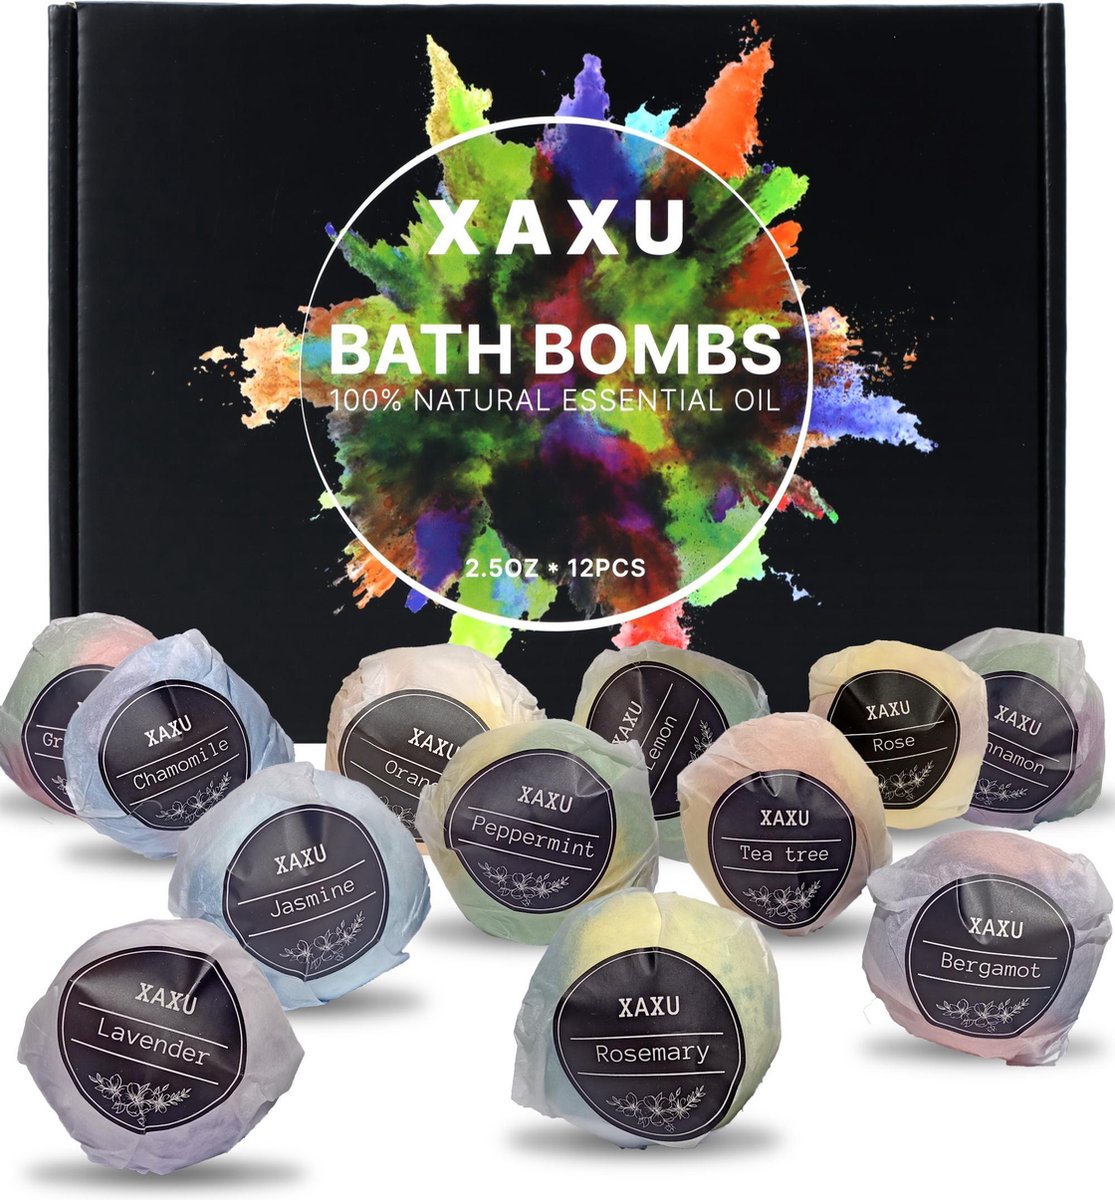 Bruisballen voor Bad - Bathbombs - Badparels - Bath Bombs - Tea tree - BadBom Lavendel Olie - 12 verschillende smaken - 70 gram per stuk